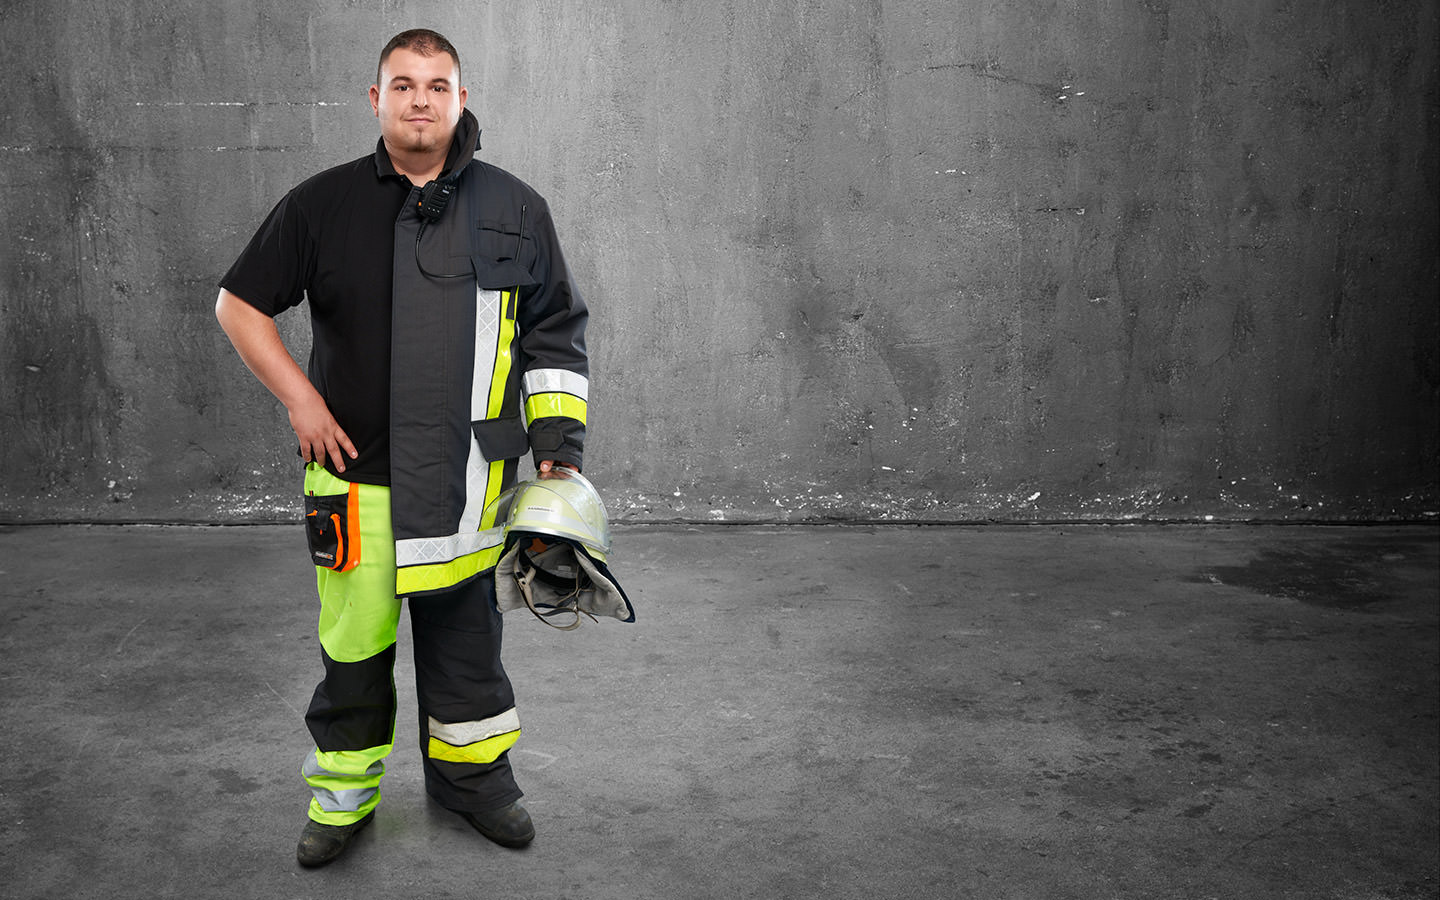 Fotomontage eines Mannes: Halb Maler und Lackierer in Arbeitskleidung, halb Feuerwehrmann in Uniform.